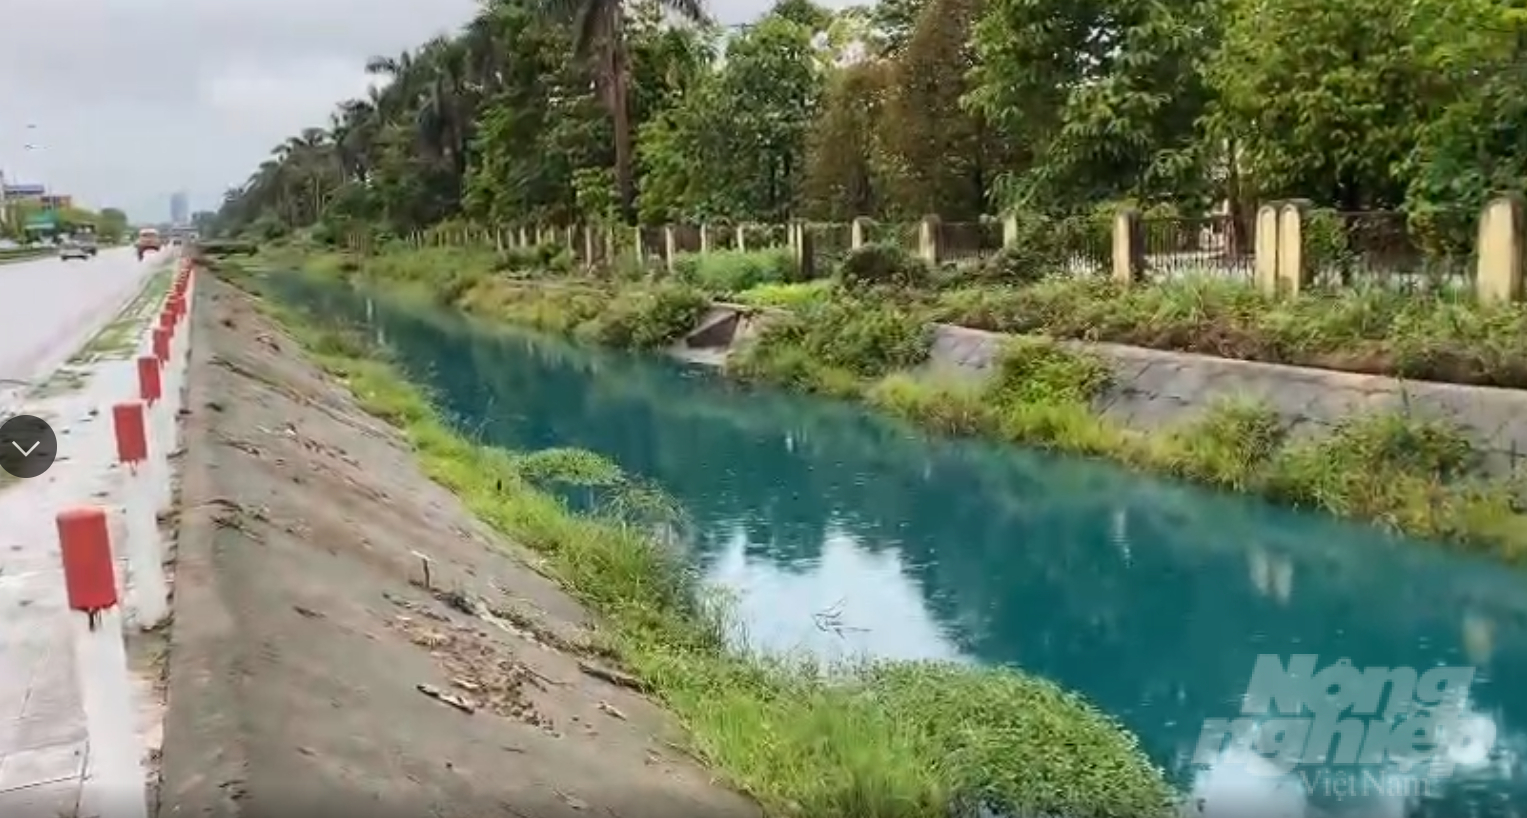 Cả dòng kênh Thành Hưng bị nhuộm màu xanh do chất thải từ Công ty Cổ phần Thần Nông. Ảnh: QT.